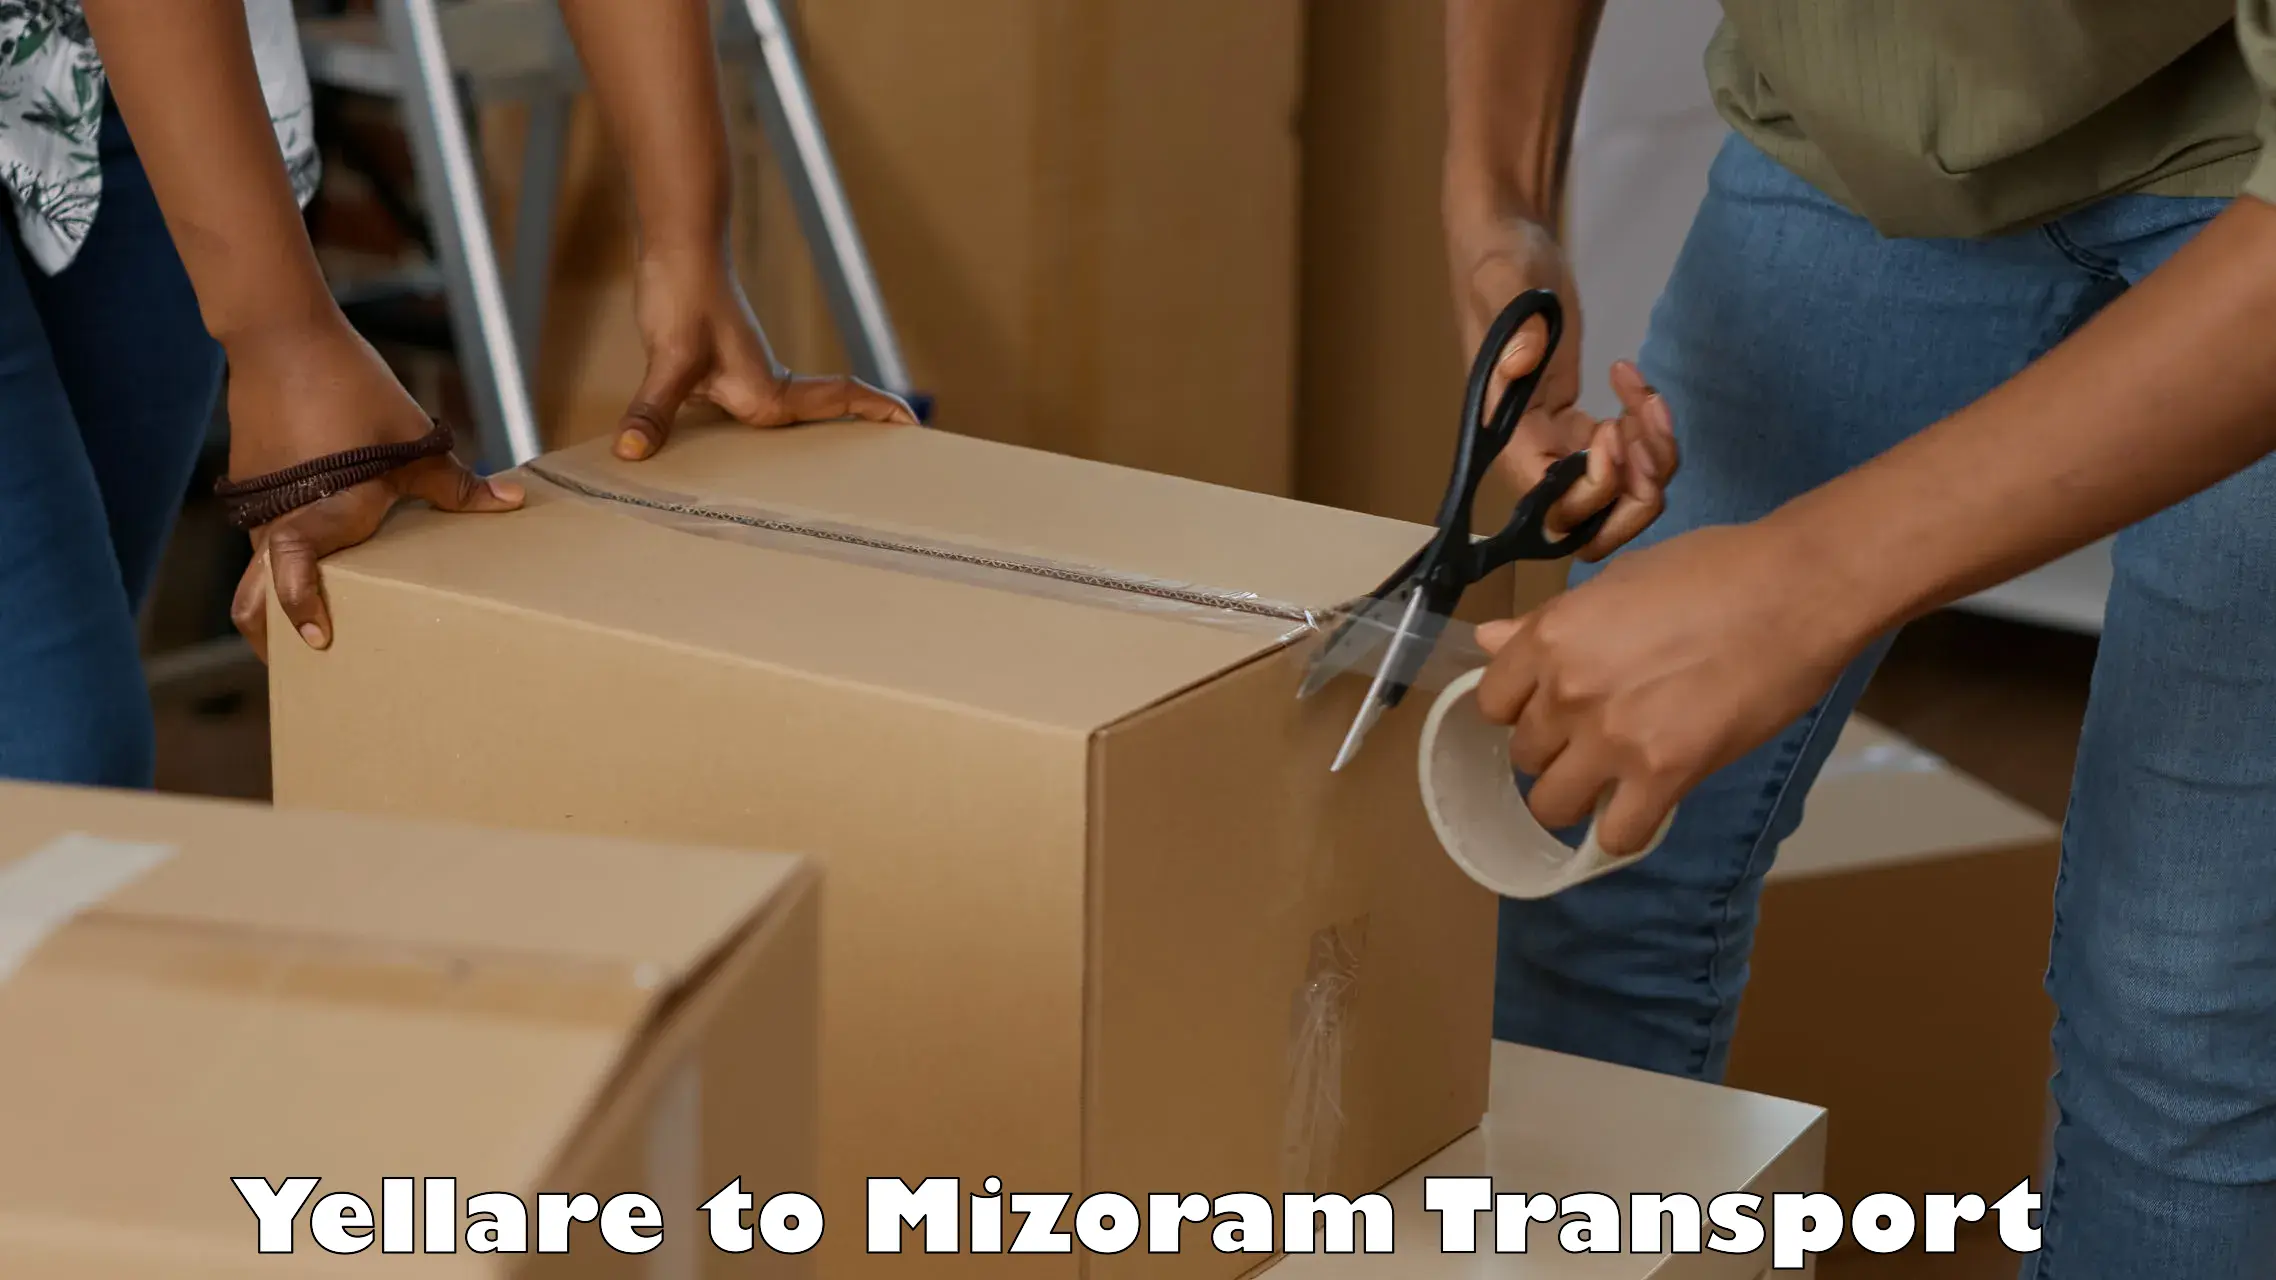 Pick up transport service Yellare to Mizoram University Aizawl